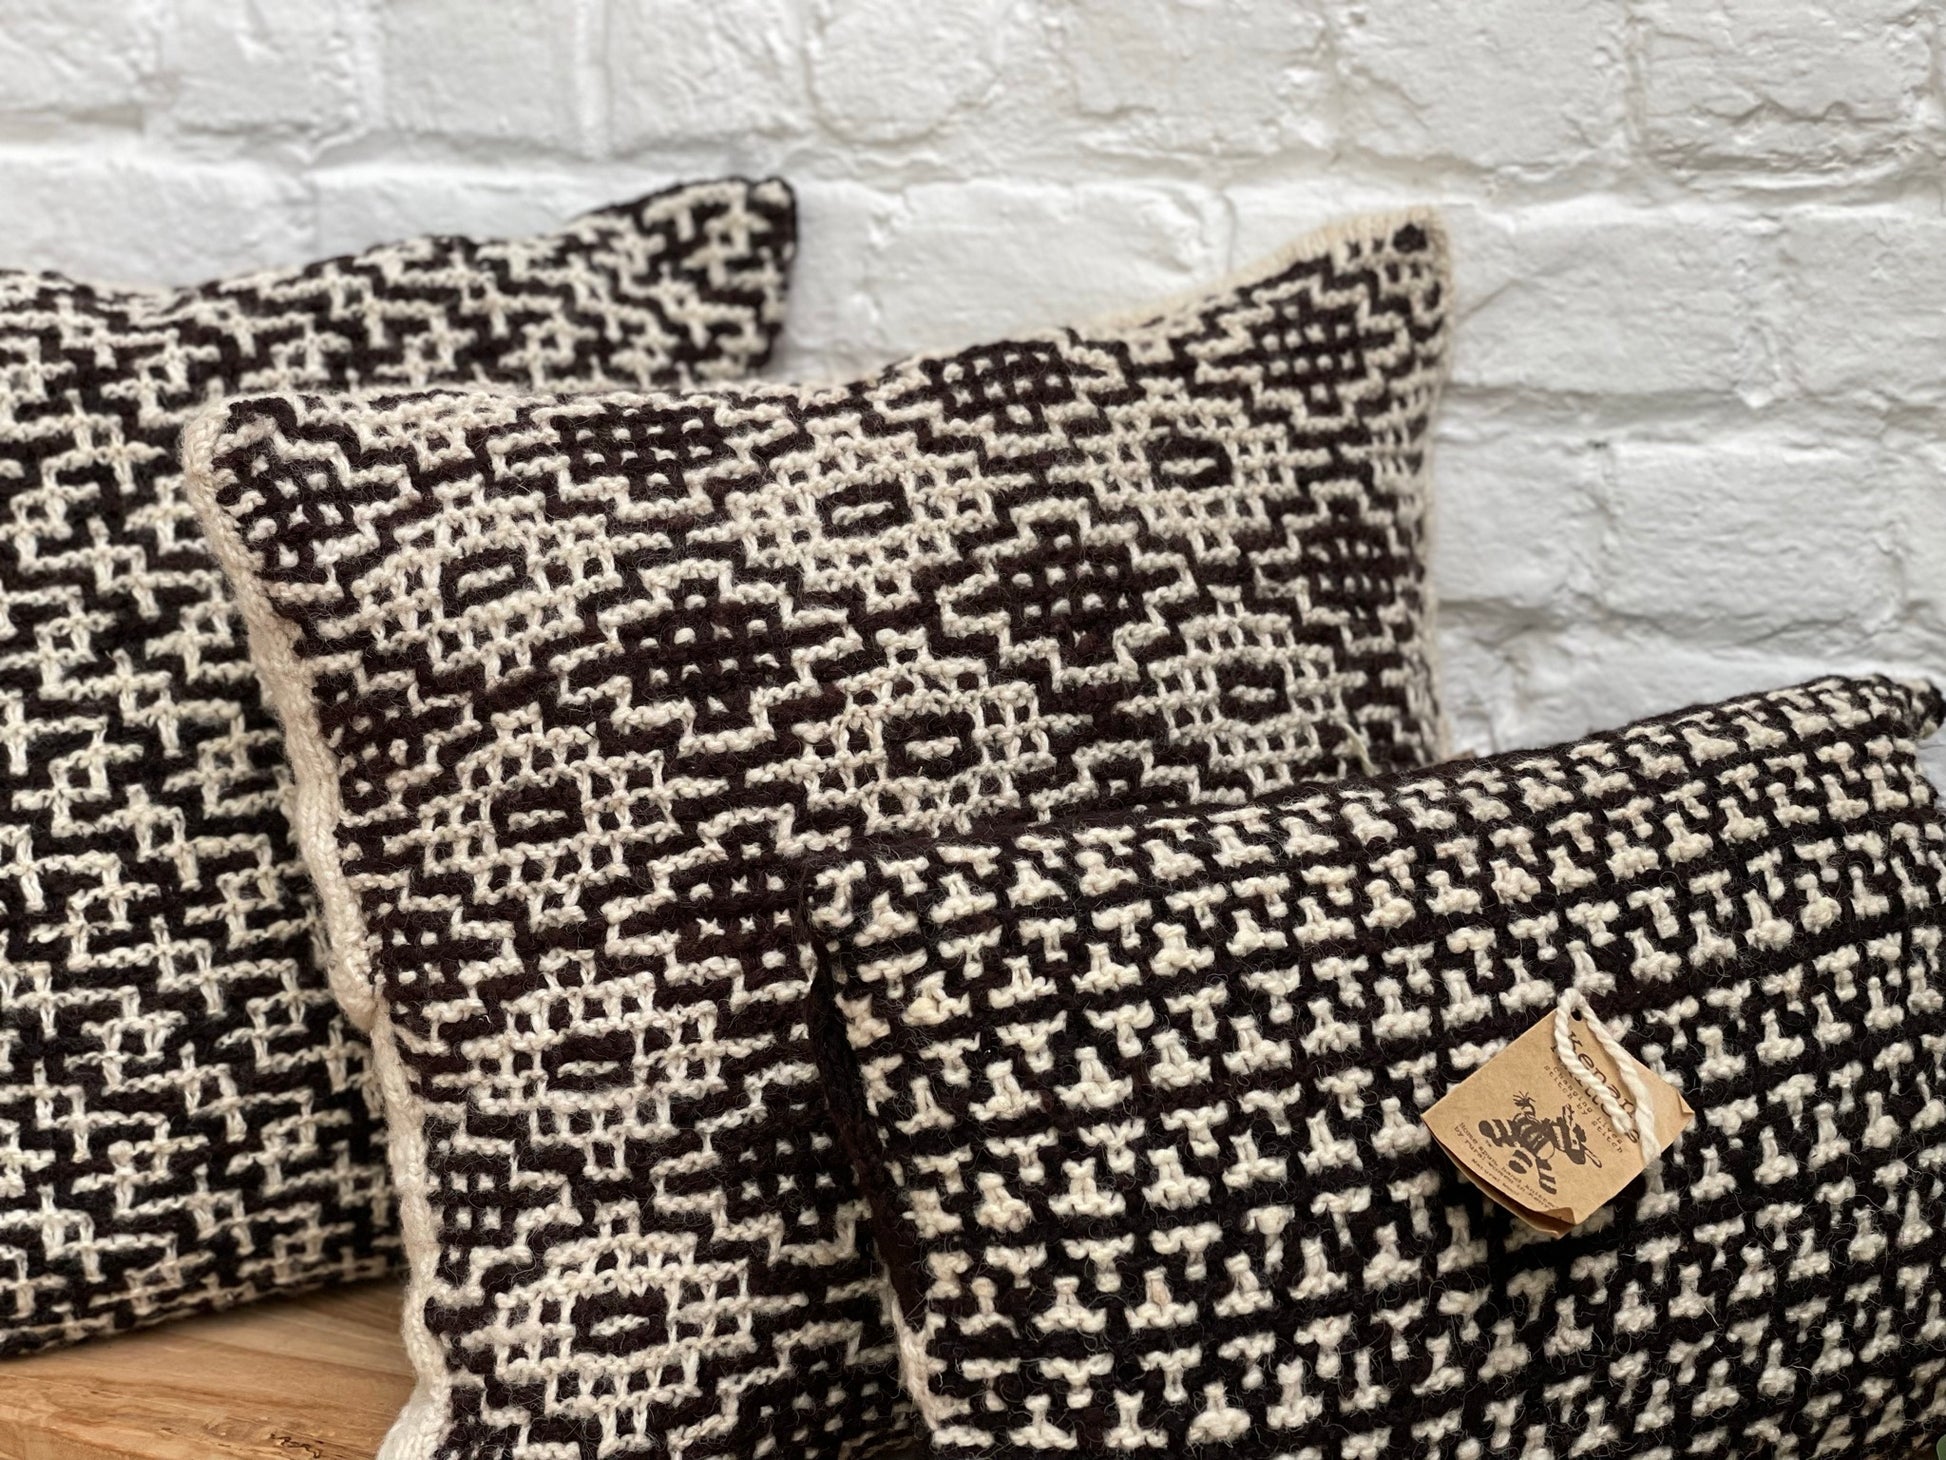 Set de 3 coussins ANASA tricotés artisanalement, en pure laine mérinos. Inserts fournis. Le kit est composé de 2 coussins de 45 x 45 cm et d'un coussin de 30 x 50 cm. Coloris naturels de la laine, écru et chocolat 